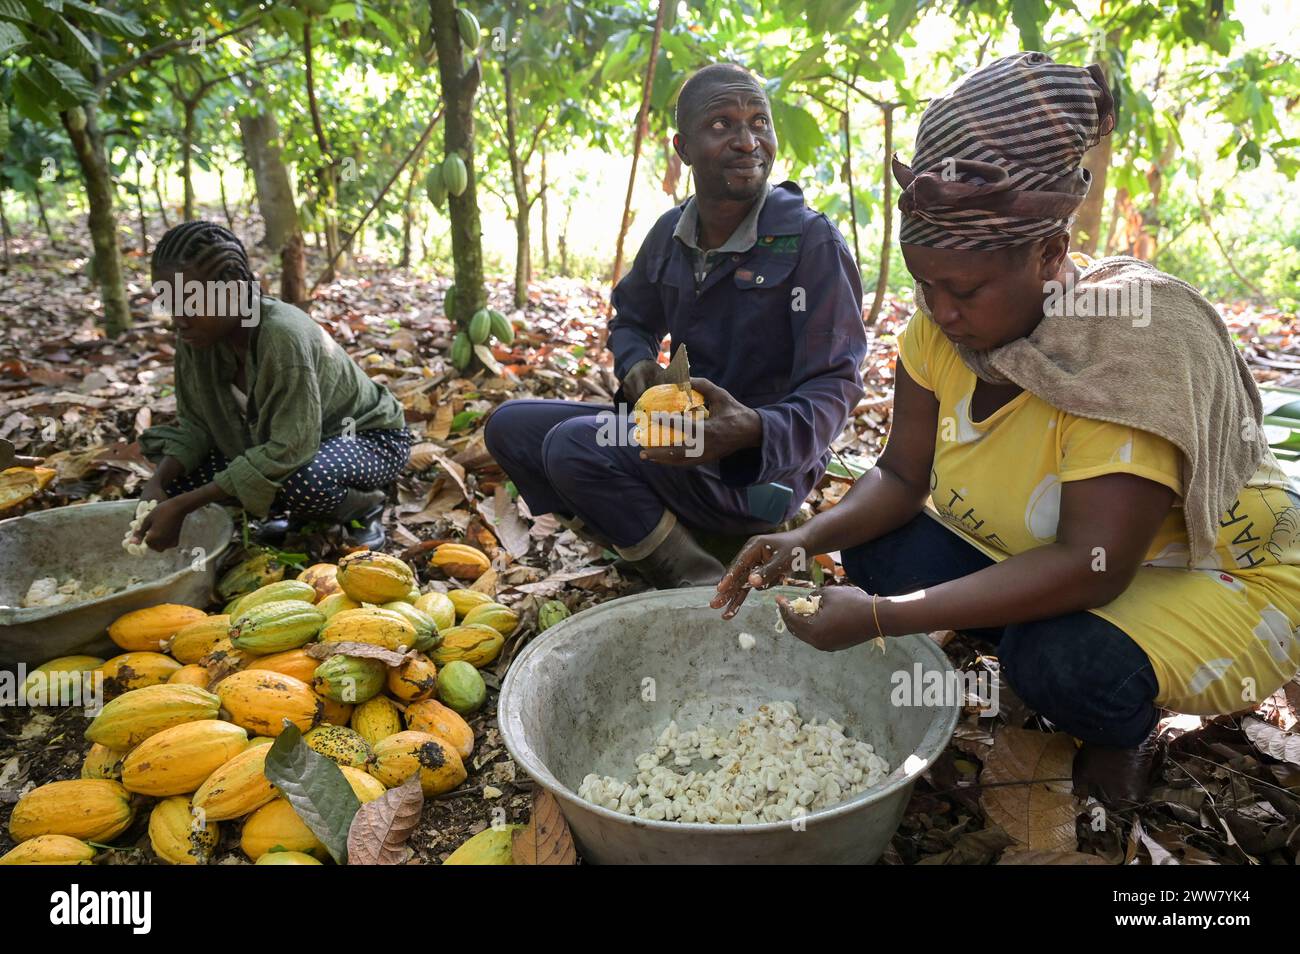 GHANA, Suhum, kleinbäuerliche Bio-Kakaofarm, Kakaoernte, die Kakaoschoten werden geöffnet, um die frischen Bohnen herauszuholen, die dann für sieben Tage fermentiert werden / GHANA, Suhum, Kleinbauern bei Bio Kakao Ernte, die Kakaofrüchte werden geöffnet und die entnommenen frischen Kakaobohnen werden für sieben Tage fermentiert Stockfoto